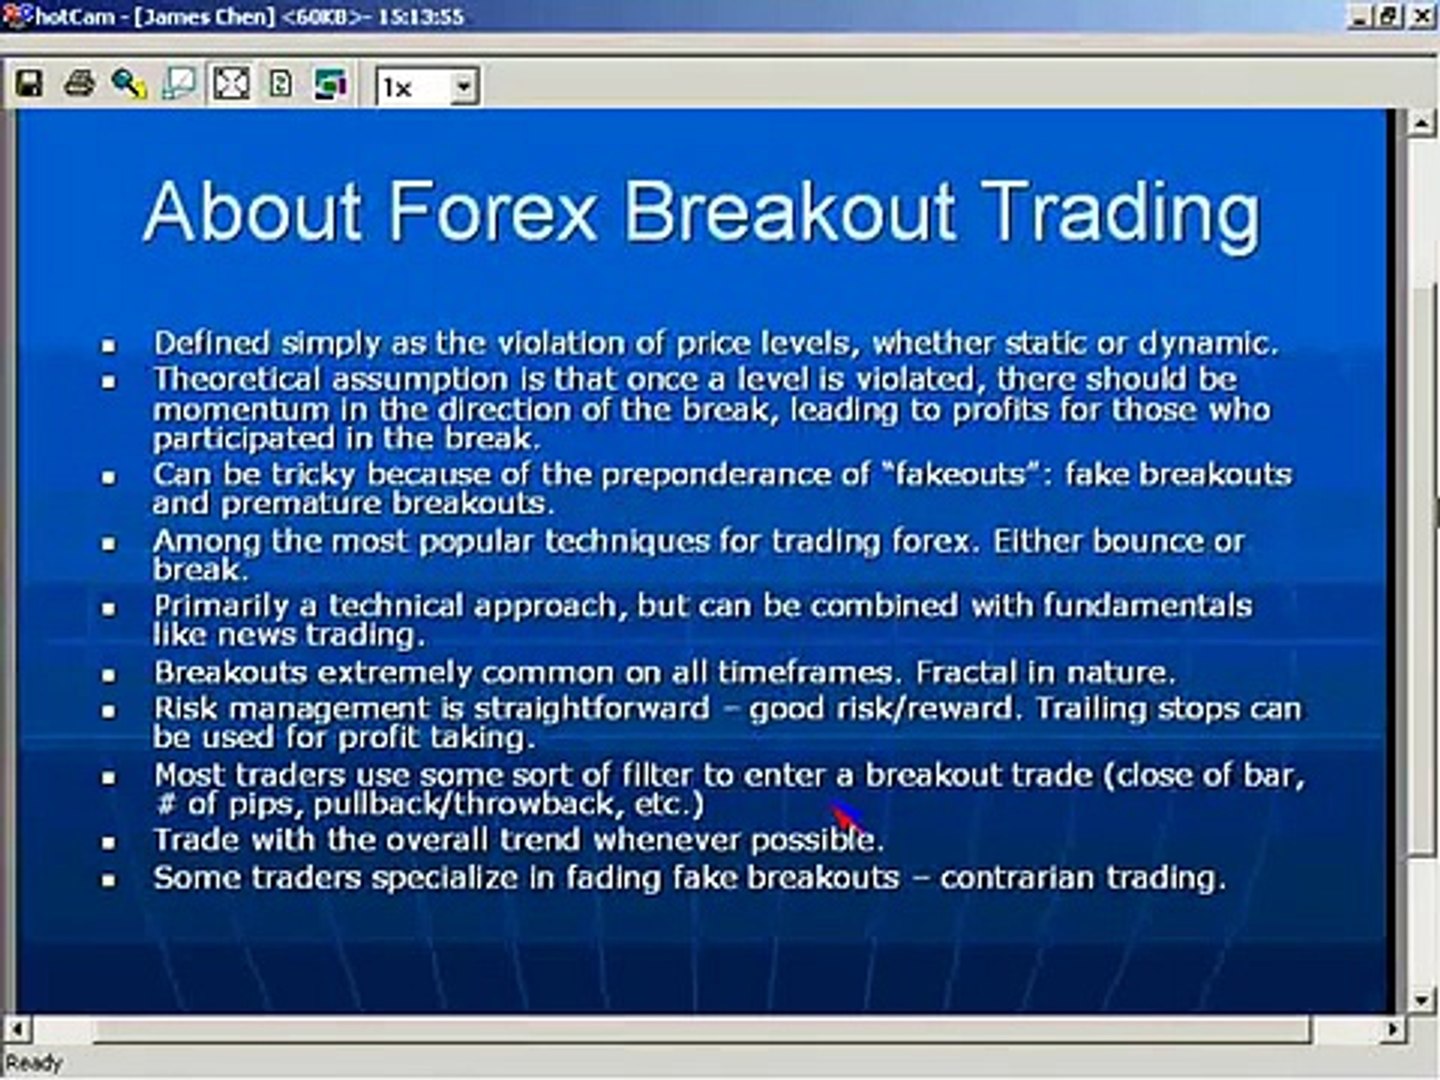 James Chen Forex | Forex Worth Money